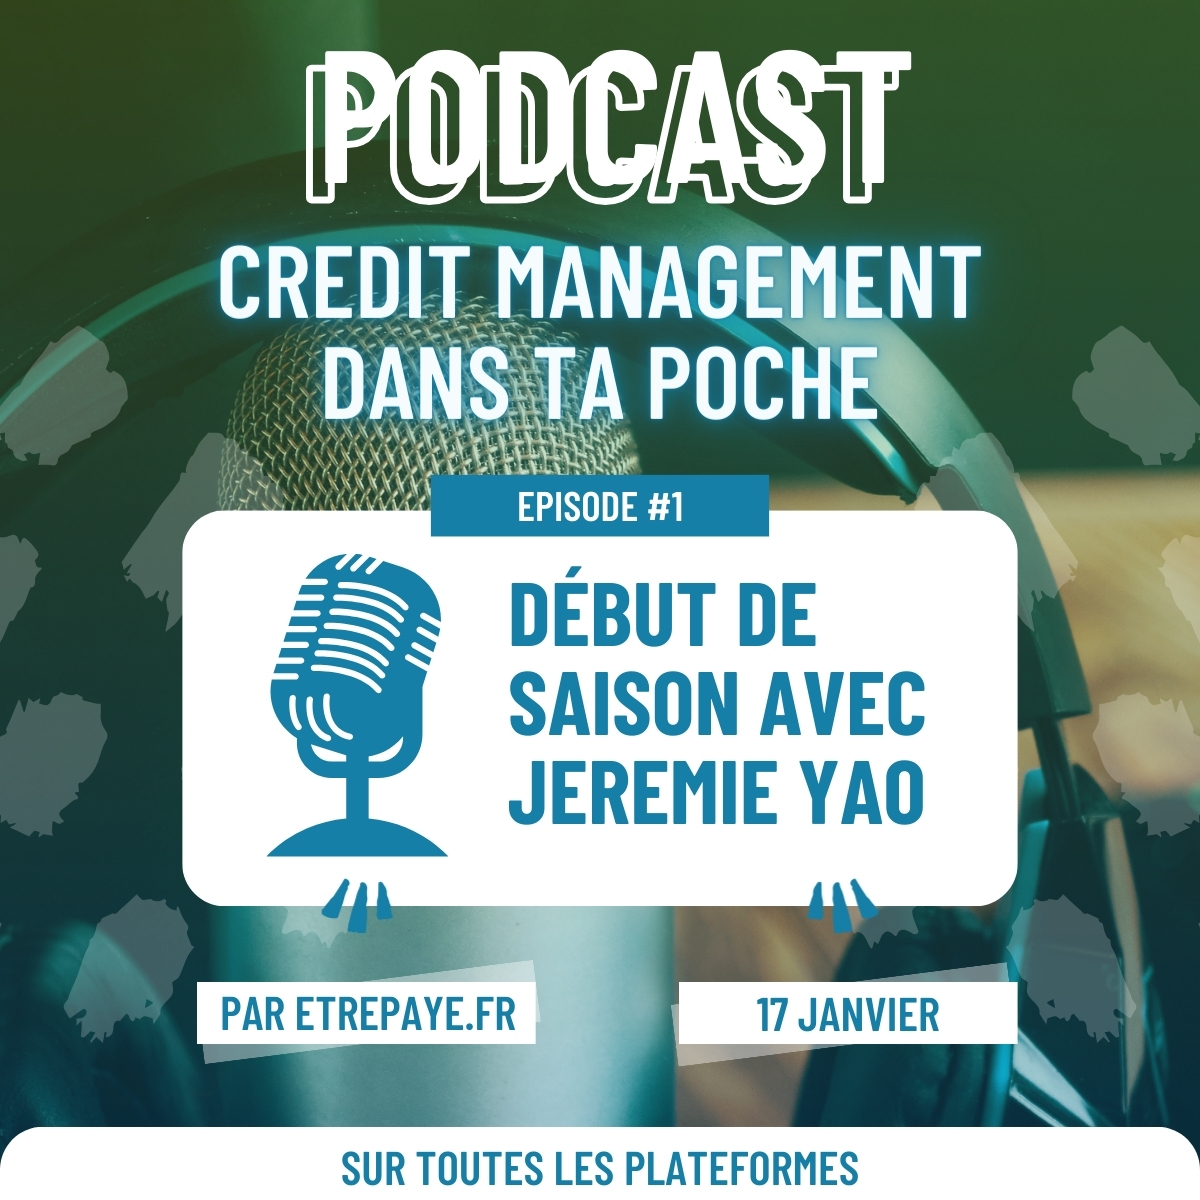 Podcast credit management dans ta poche, premier épisode le 17 janvier avec Jérémie YAO